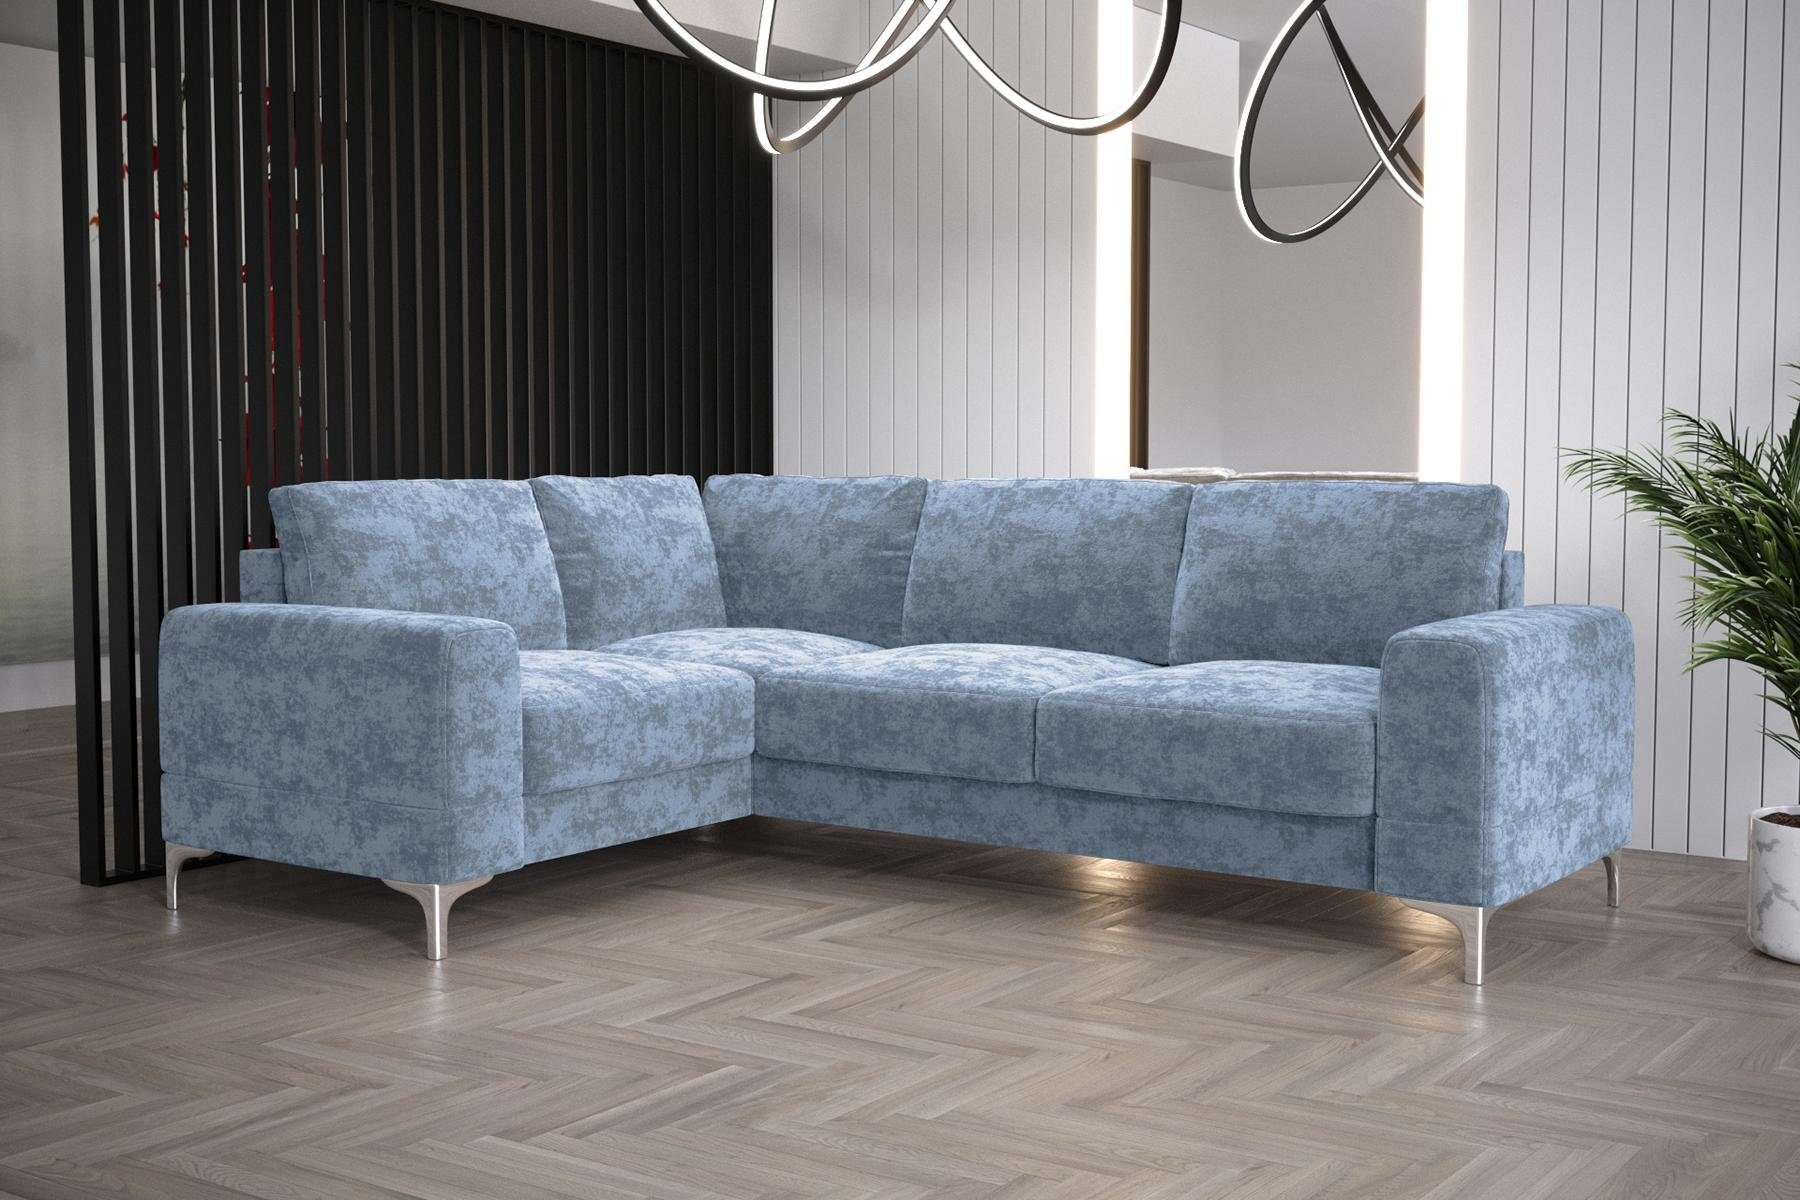 Modern JVmoebel Ecksofa Couch, L-Form Ecksofa Möbel Sofa Made in Luxus Wohnzimmer Europe Blau